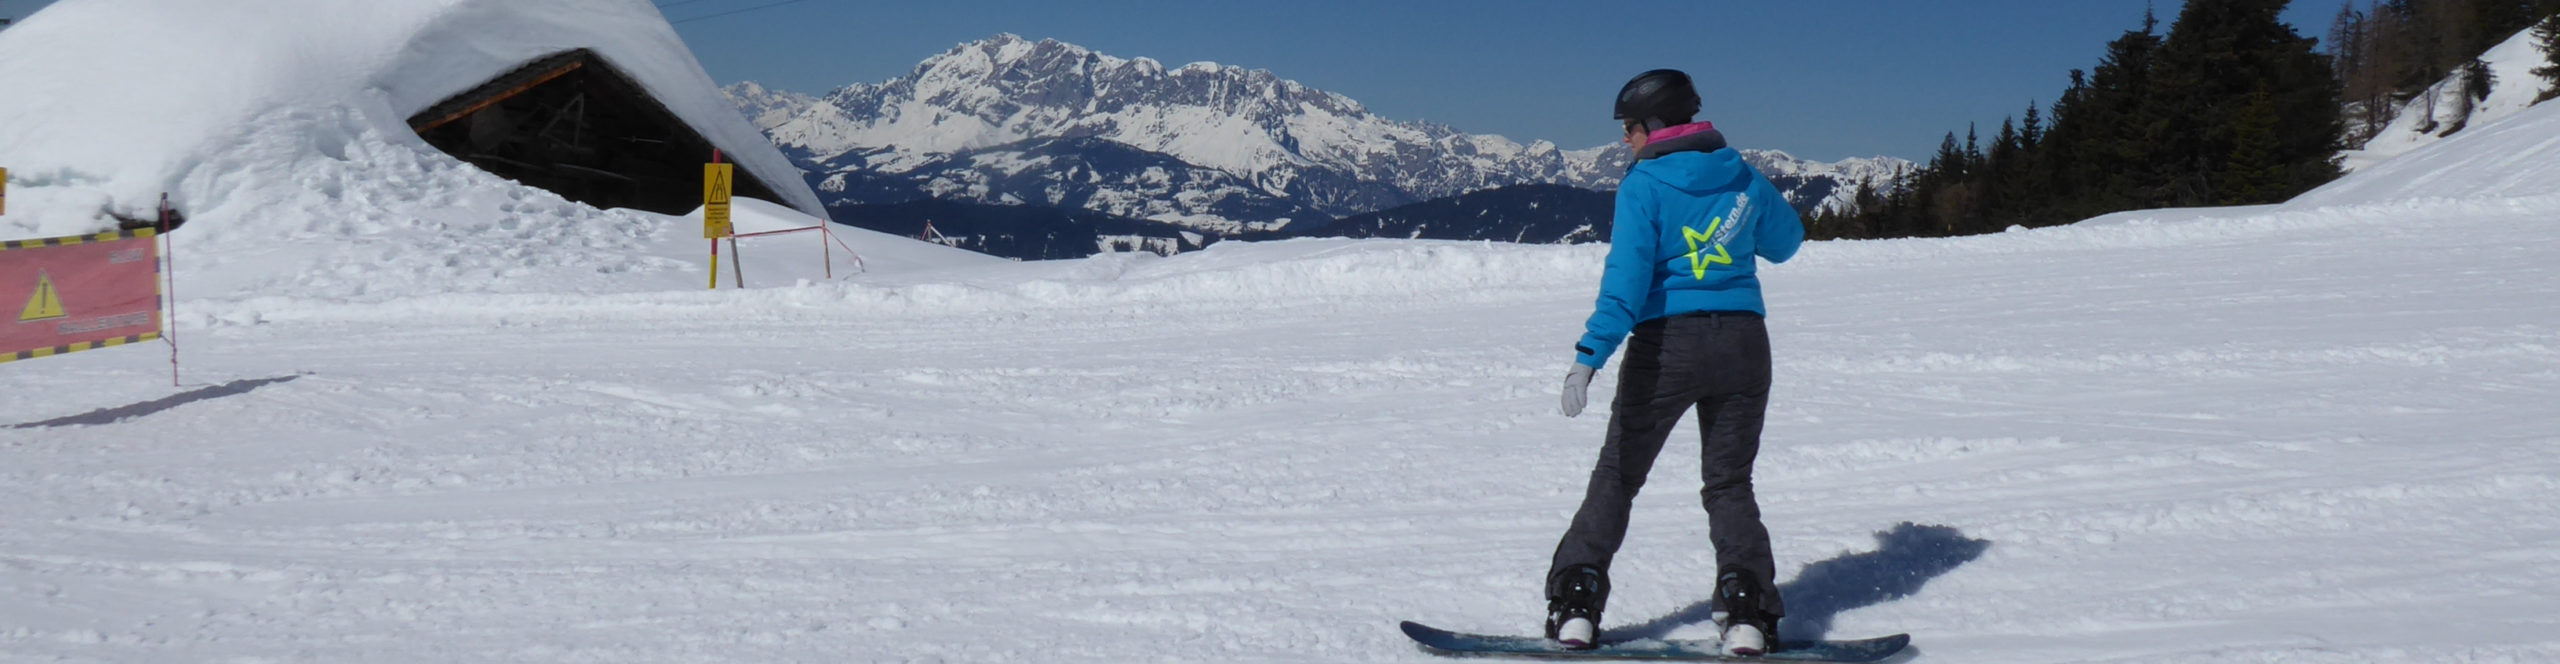 SKIWELT WILDER KAISER – SCHEFFAU – Skiwochenende in eines der größten Skigebiete Österreichs 